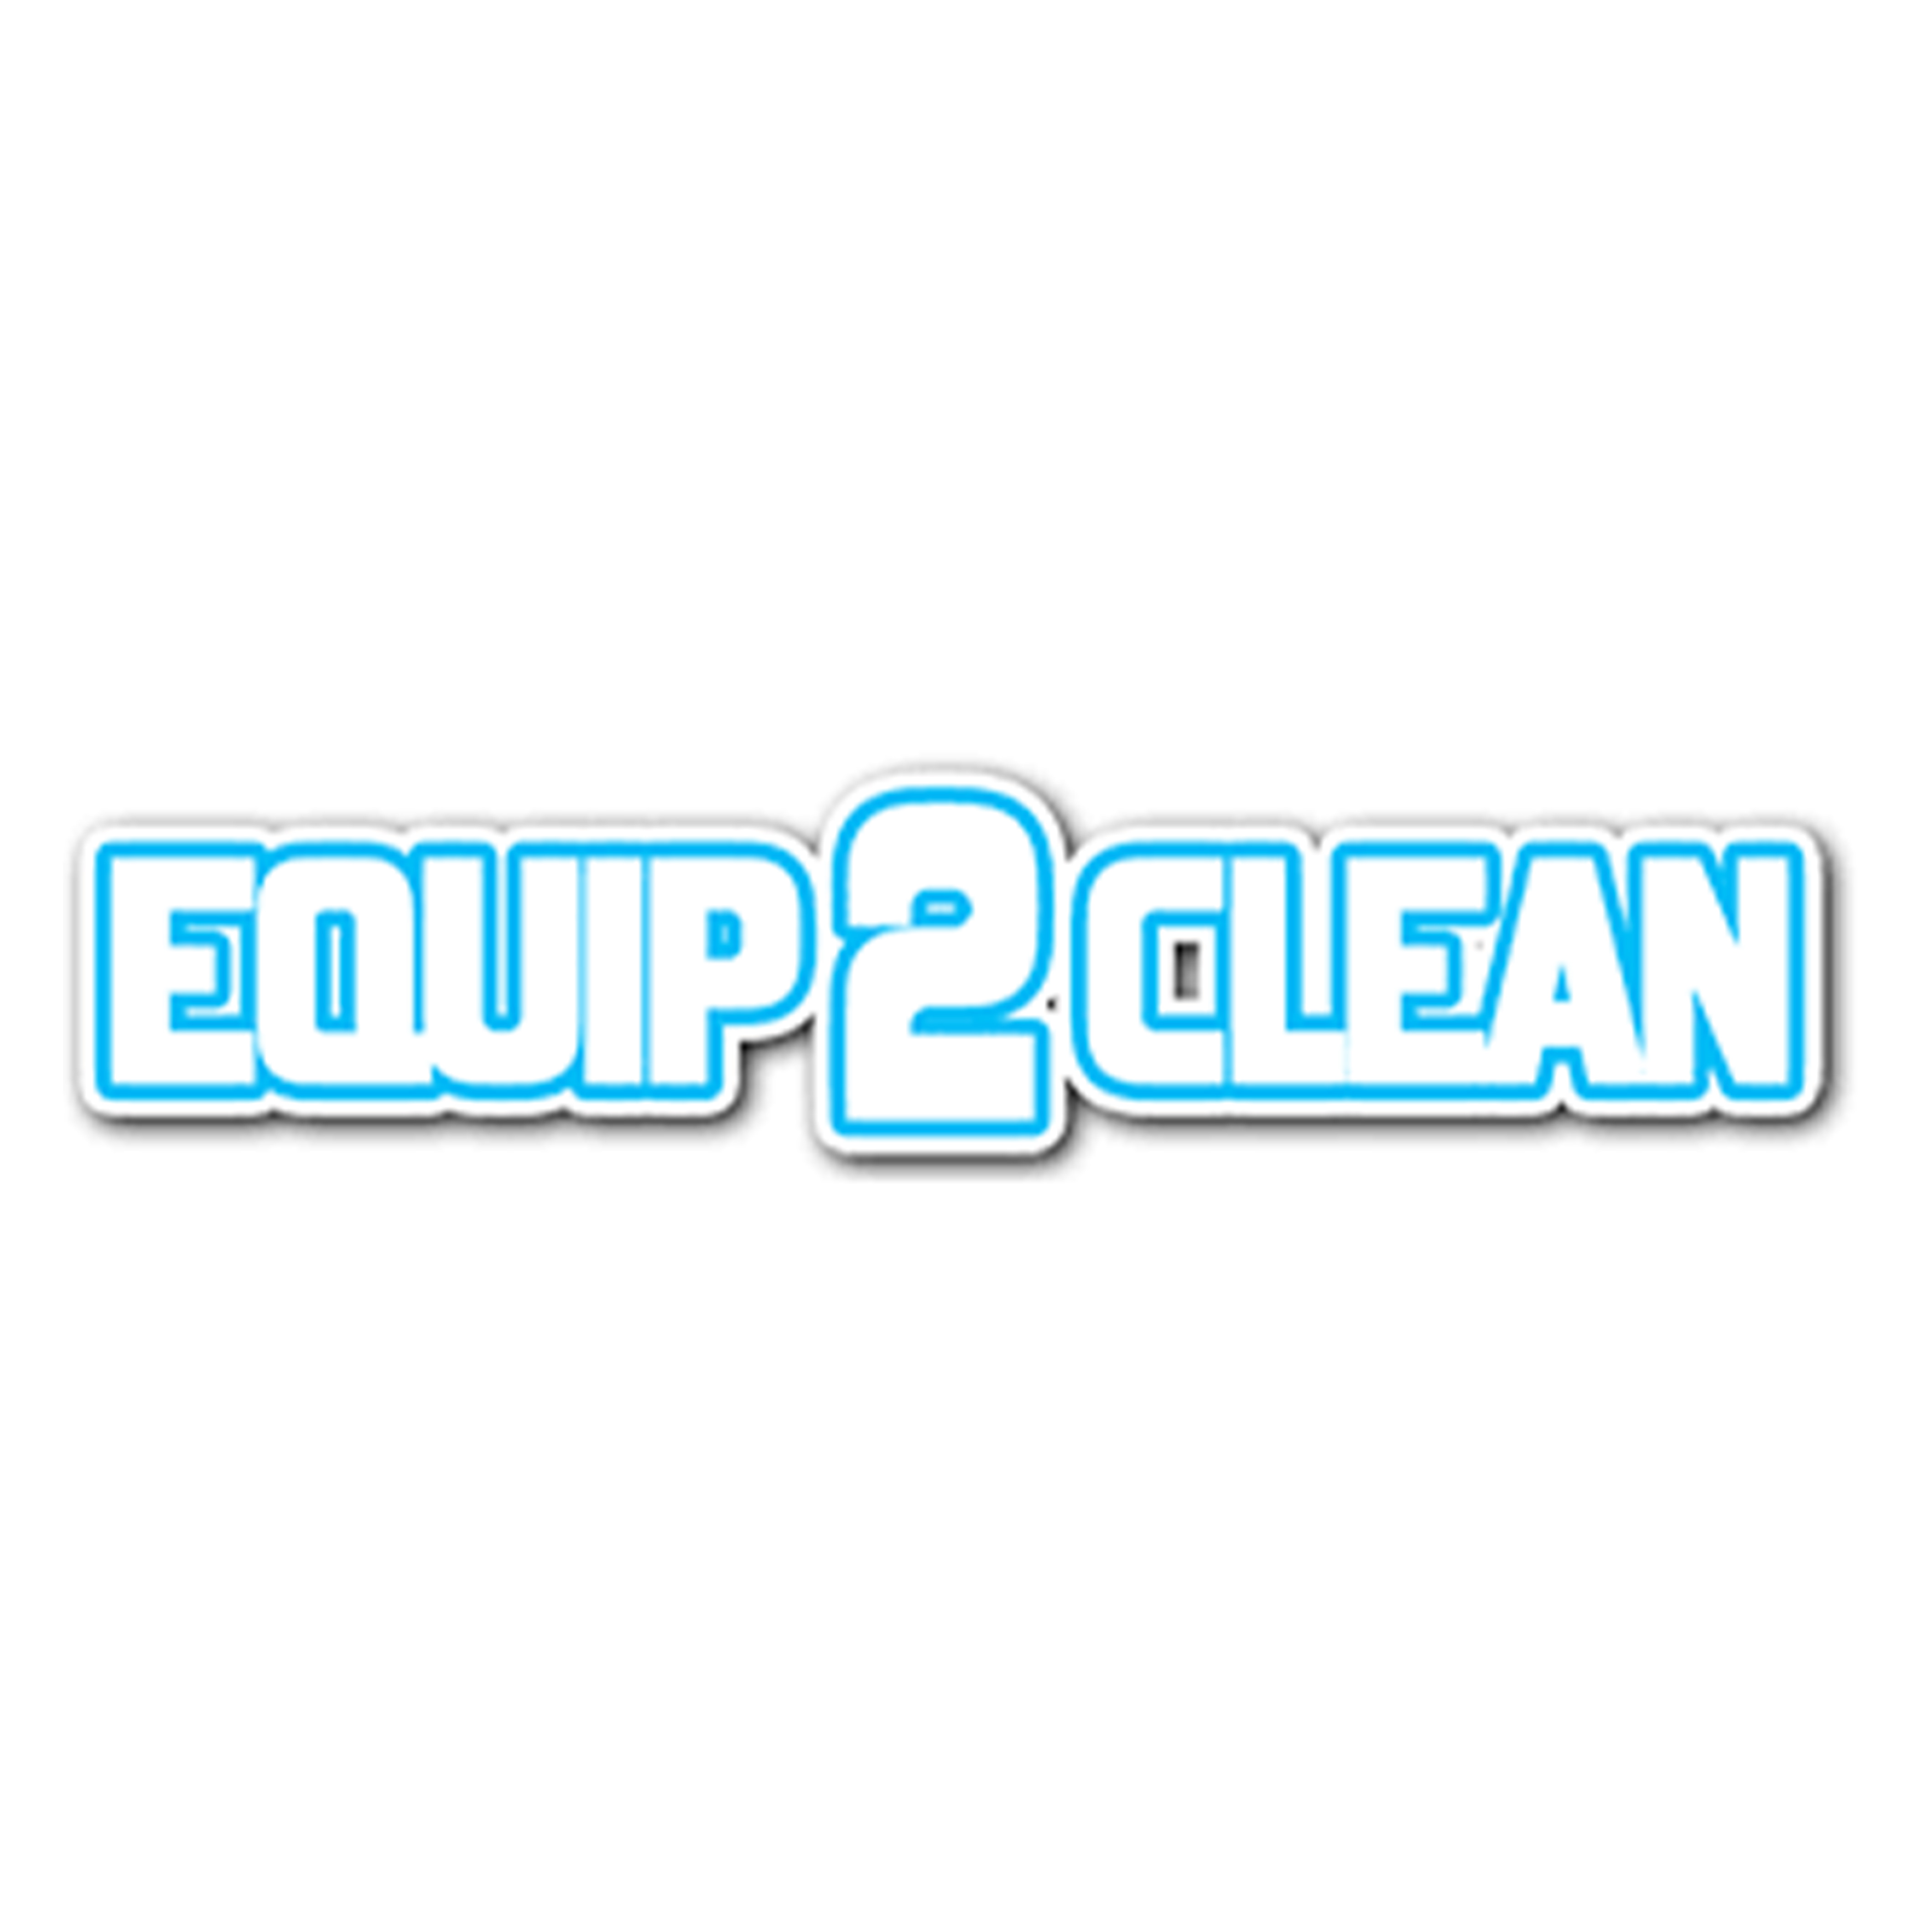 Equip2Clean logo